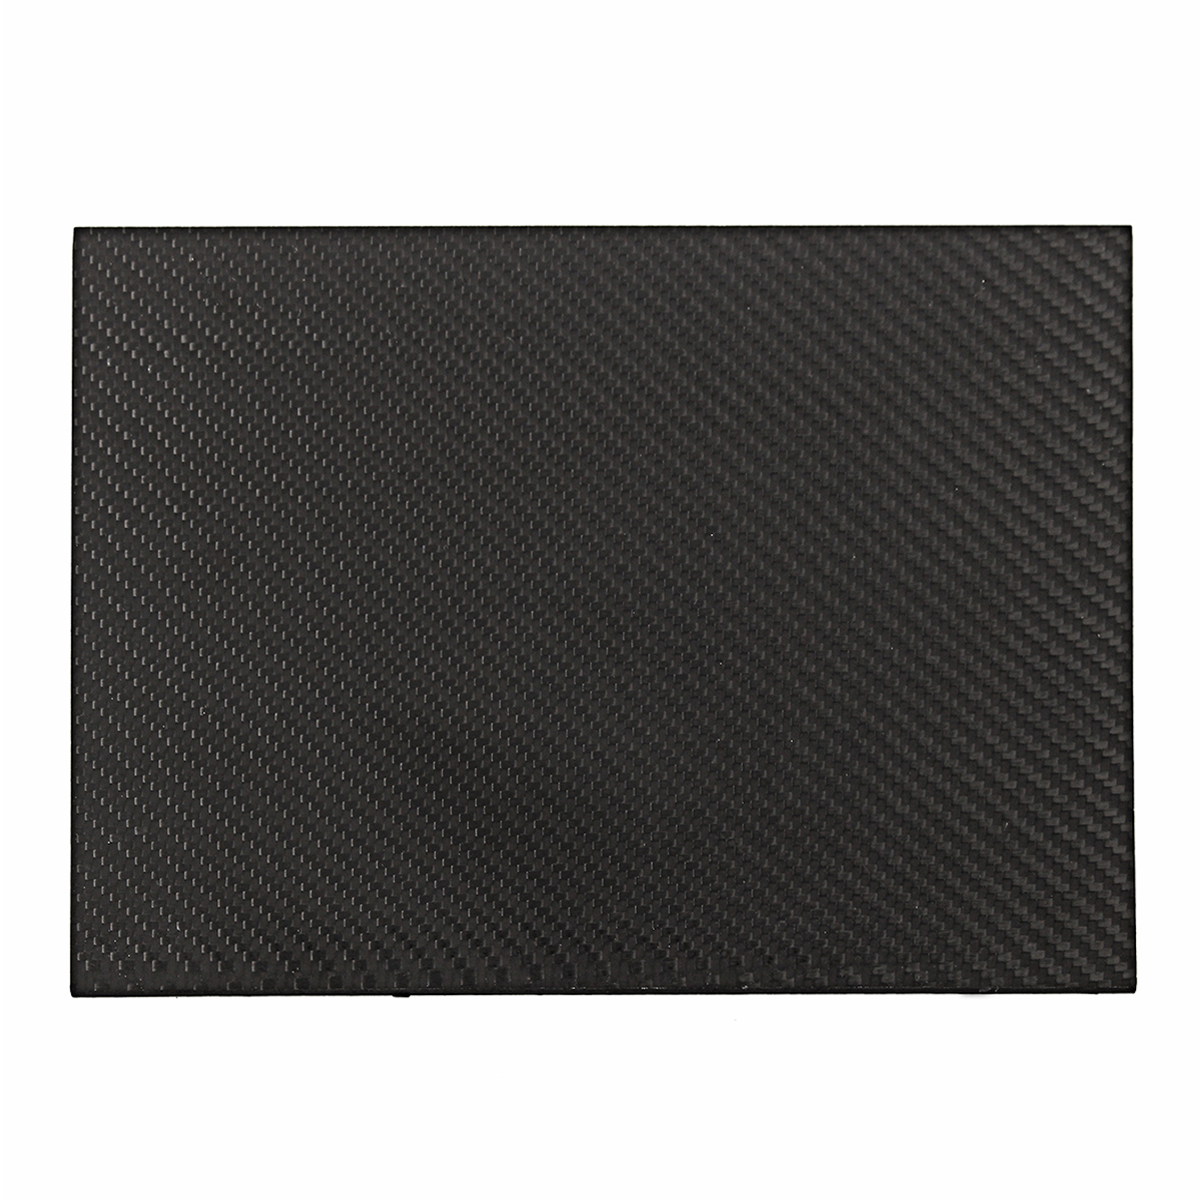 200x250x05-2mm-Plain-Weave-3K-Carbon-Fiber-Plate-Panel-Sheet-Twill-Matt-Surface-Board-1332225-6